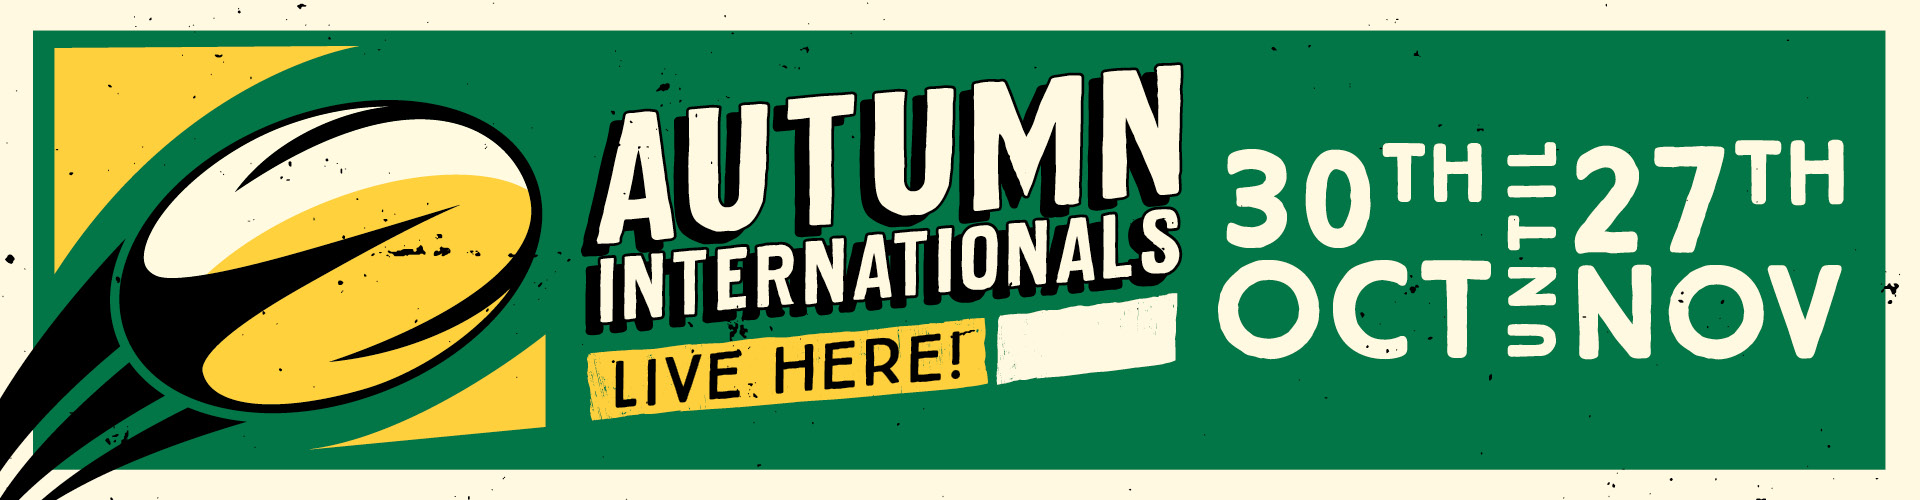 Autumn Internationals